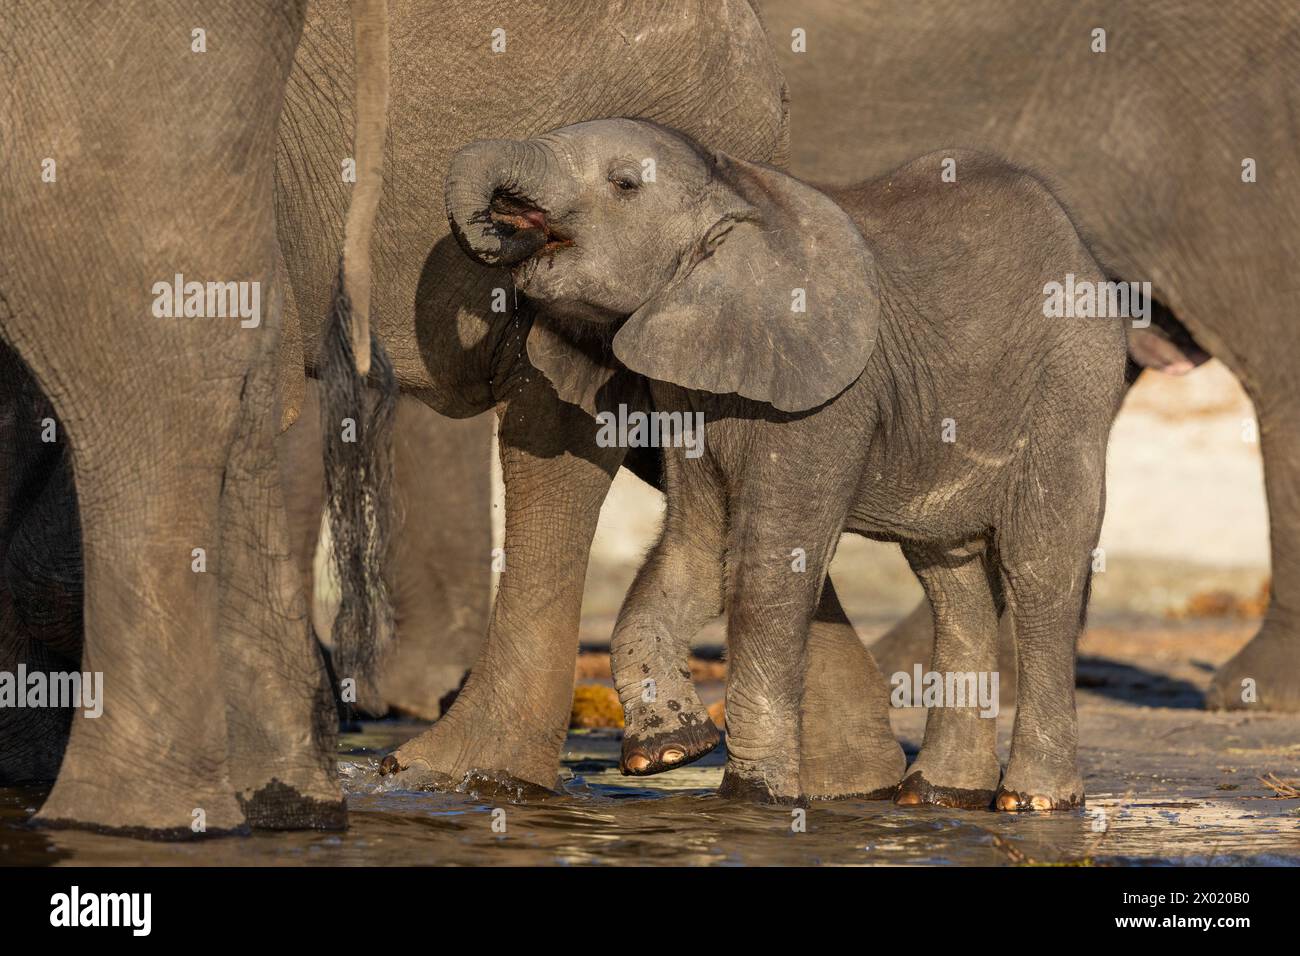 Elephant (Loxodonta africana) calf, Chobe national park, Botswana Stock Photo